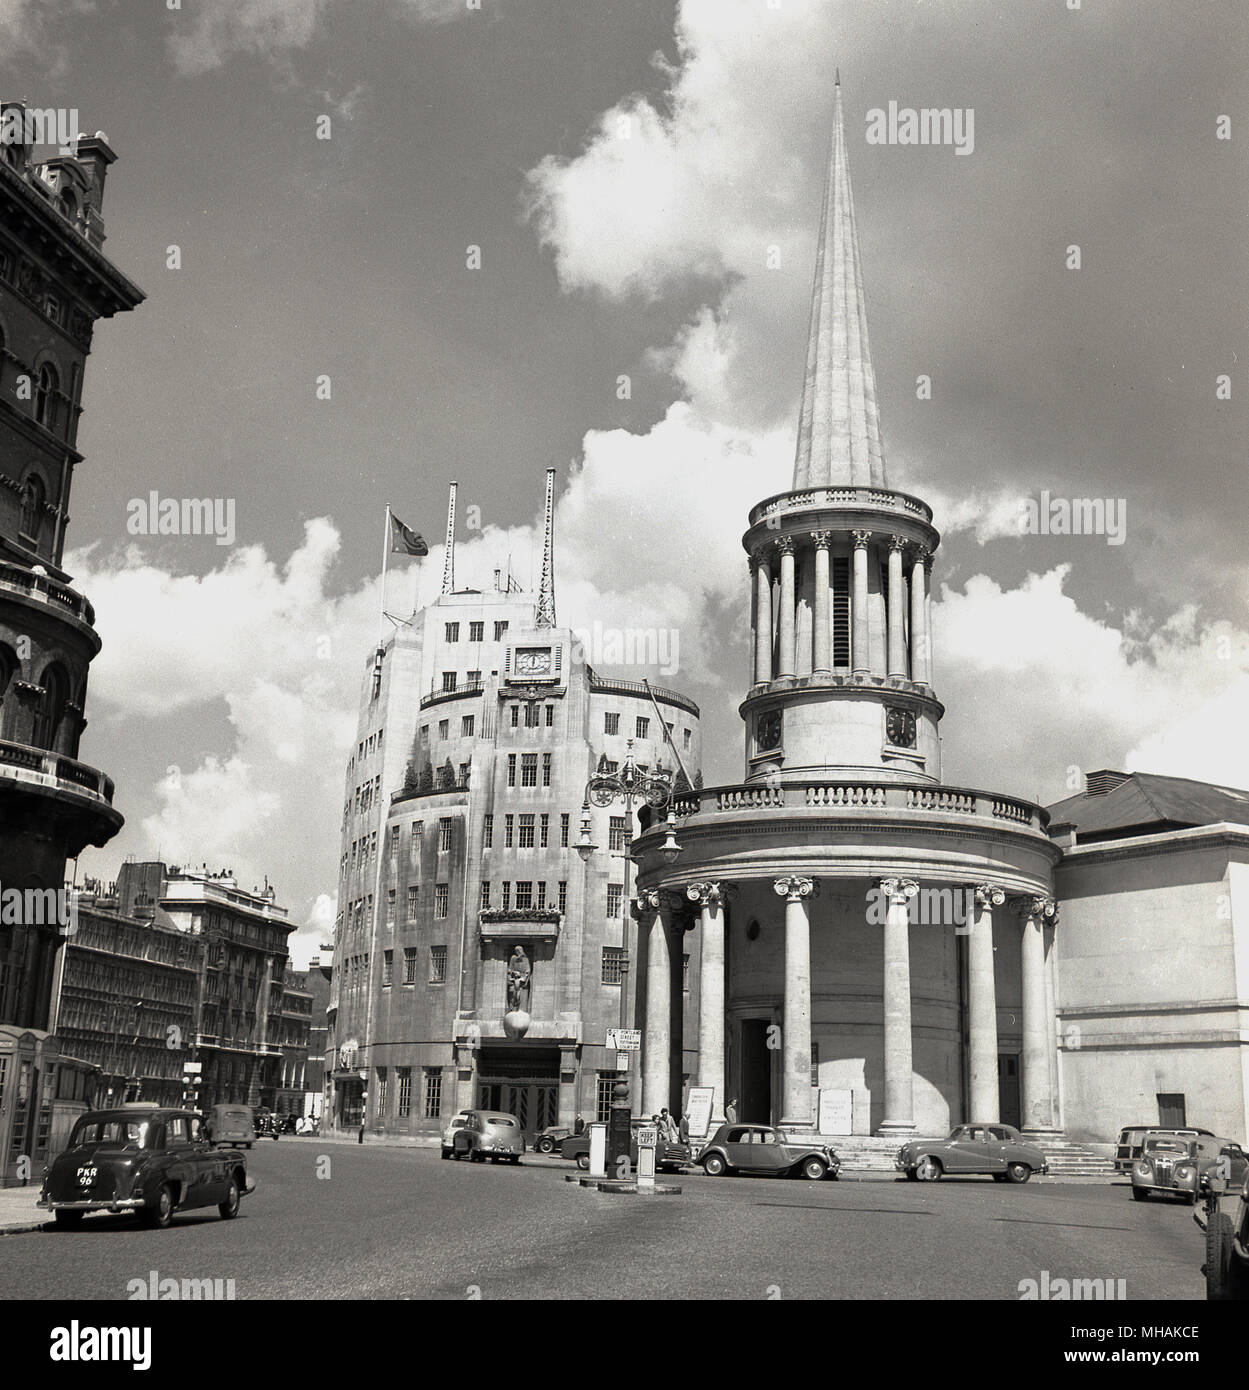 Années 1950, historique, vue extérieure de l'Église toutes les âmes à Langham Place, Londres, avec Broadcasting House, le centre de Londres de la BBC, derrière elle. L'église avec sa grande élégante flèche a été conçu dans un style Régence de John Nash. Banque D'Images